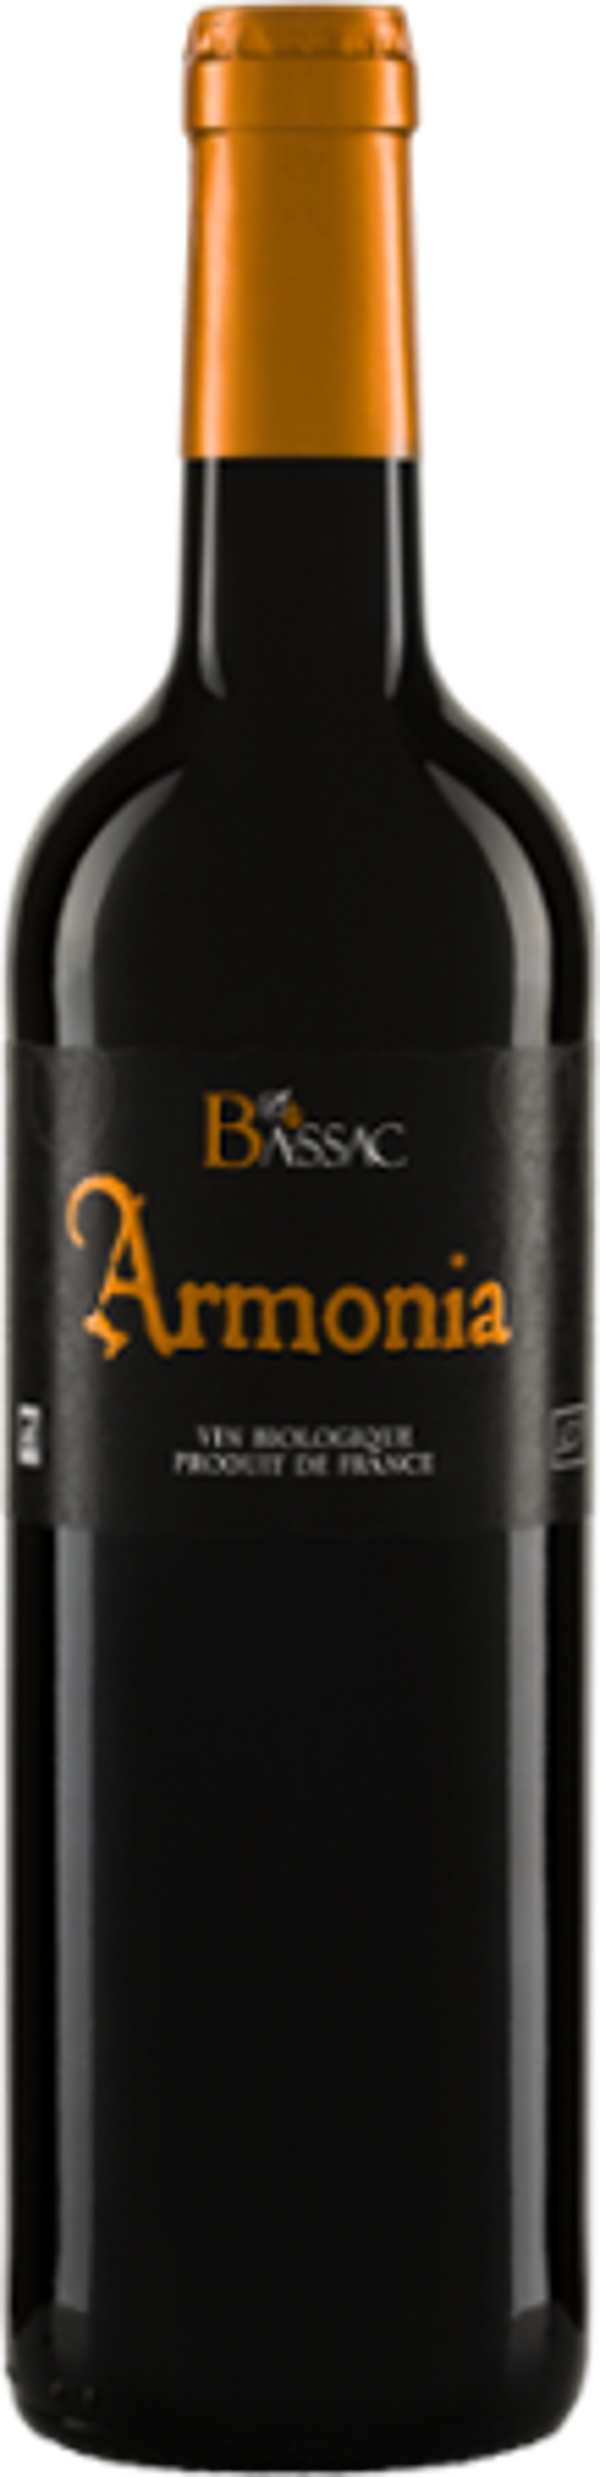 Produktfoto zu ARMONIA Rouge Domaine Bassac